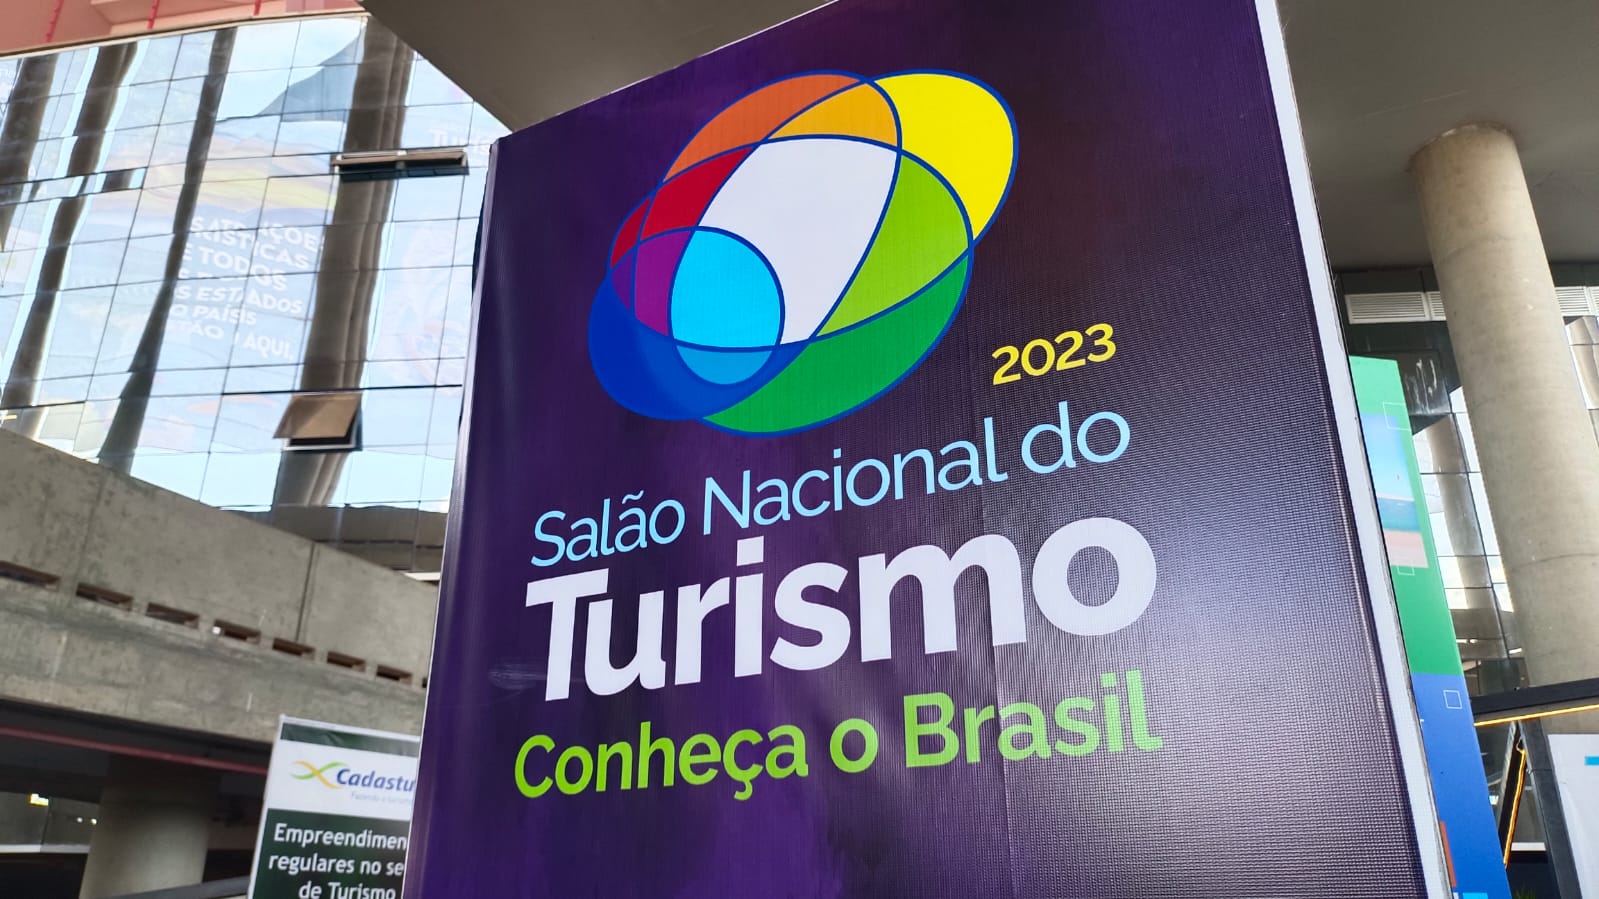 Salón Nacional de Turismo de Brasil